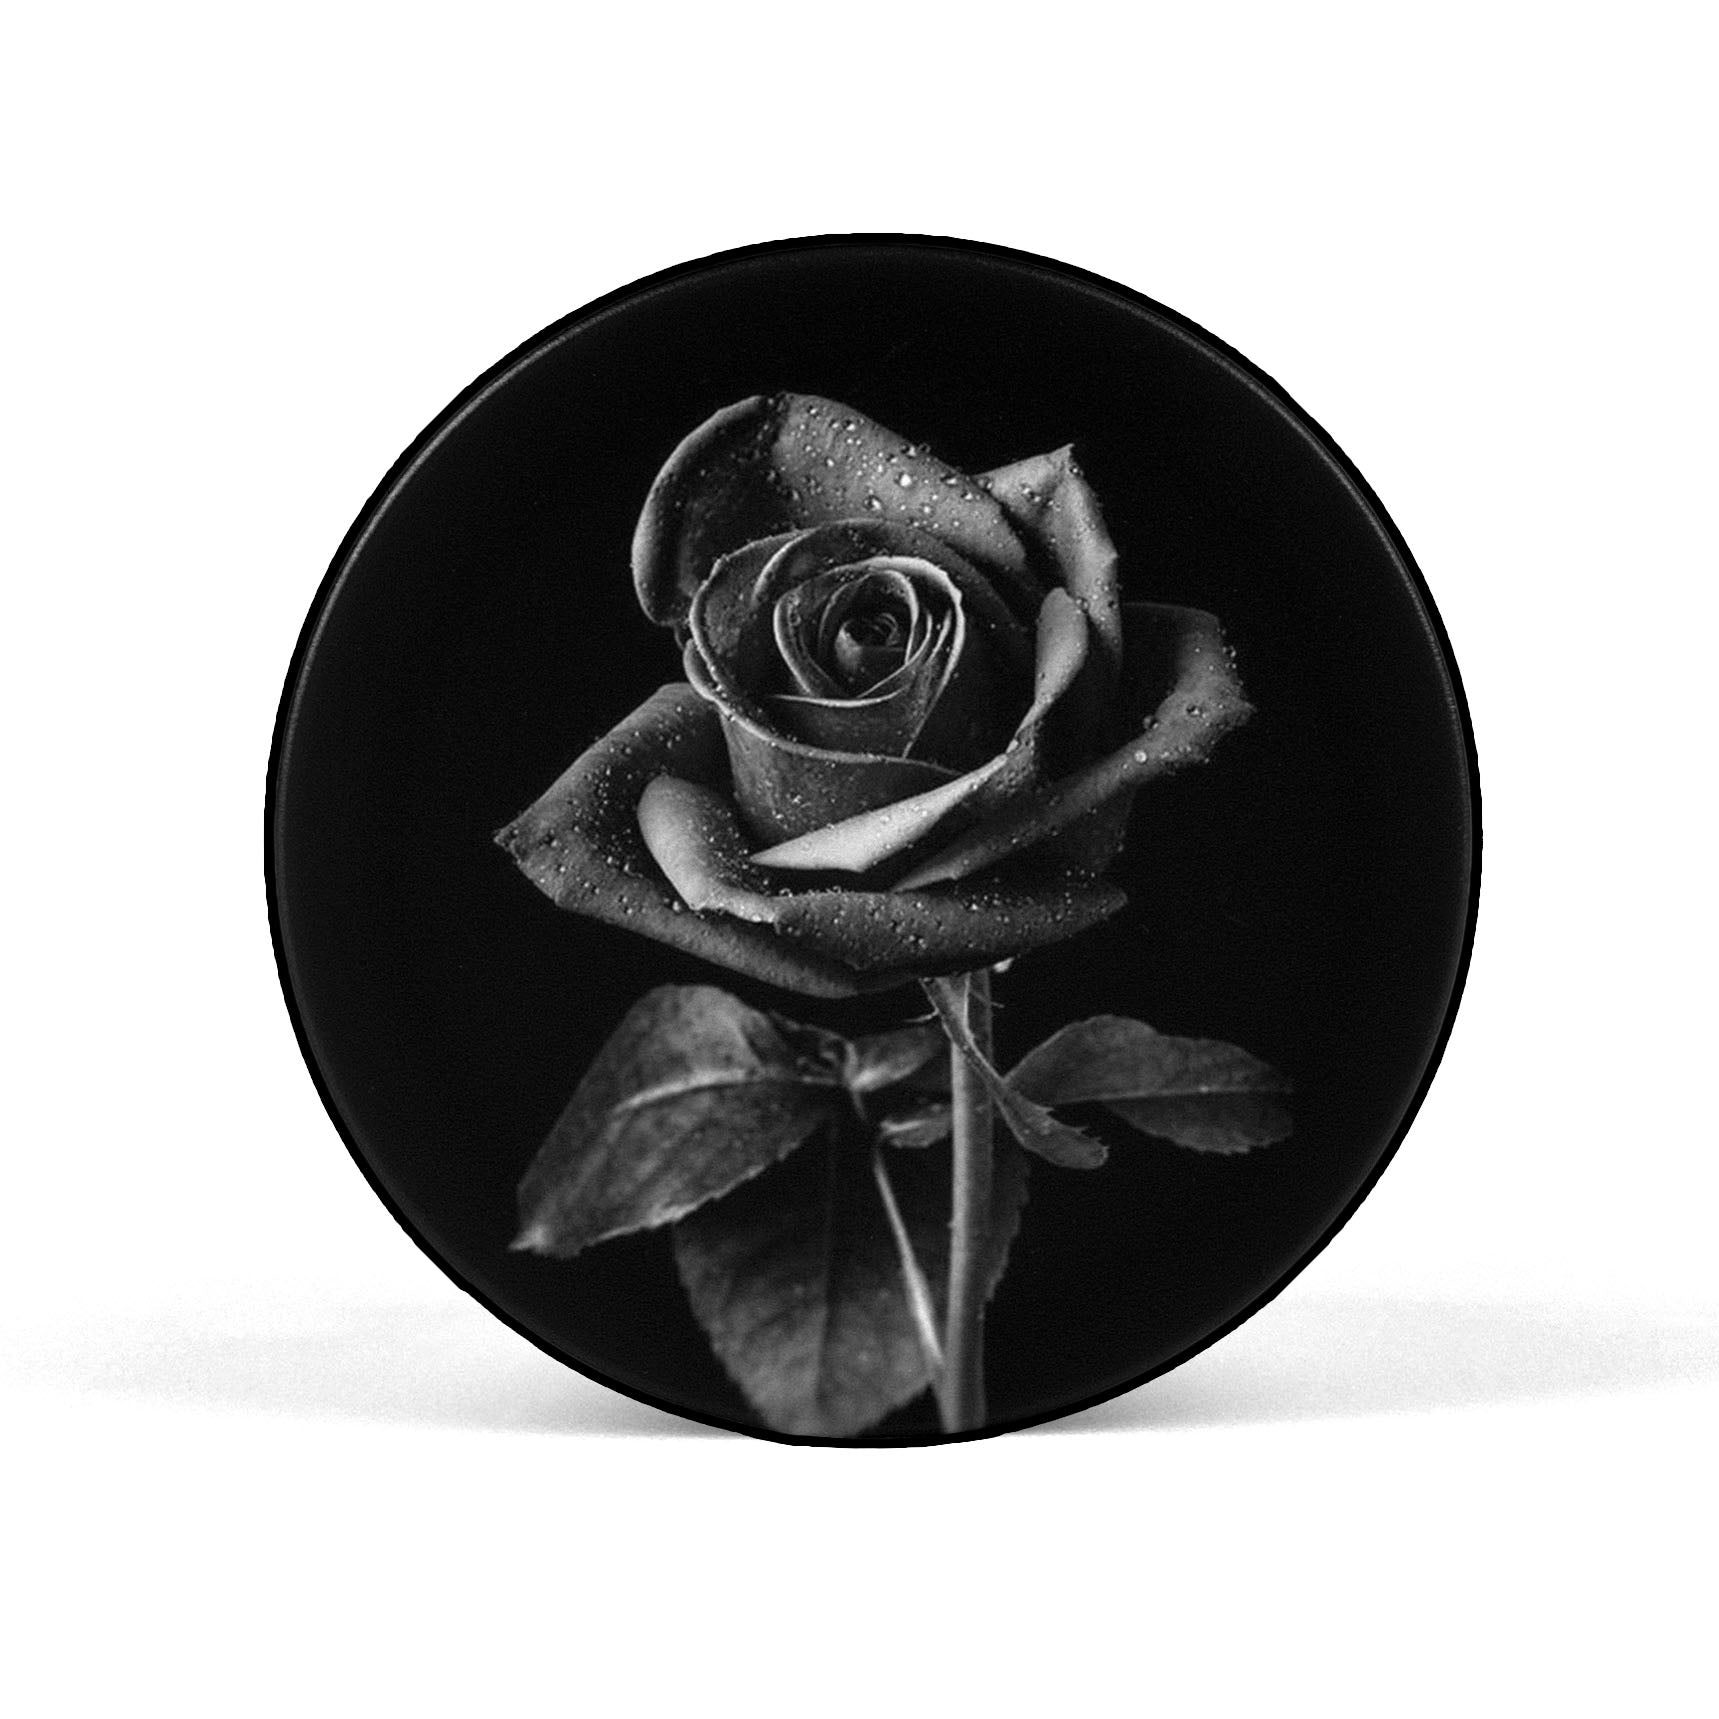 Black & White Rose Floral Mobile Phone Holder Grip - SCOTTSY